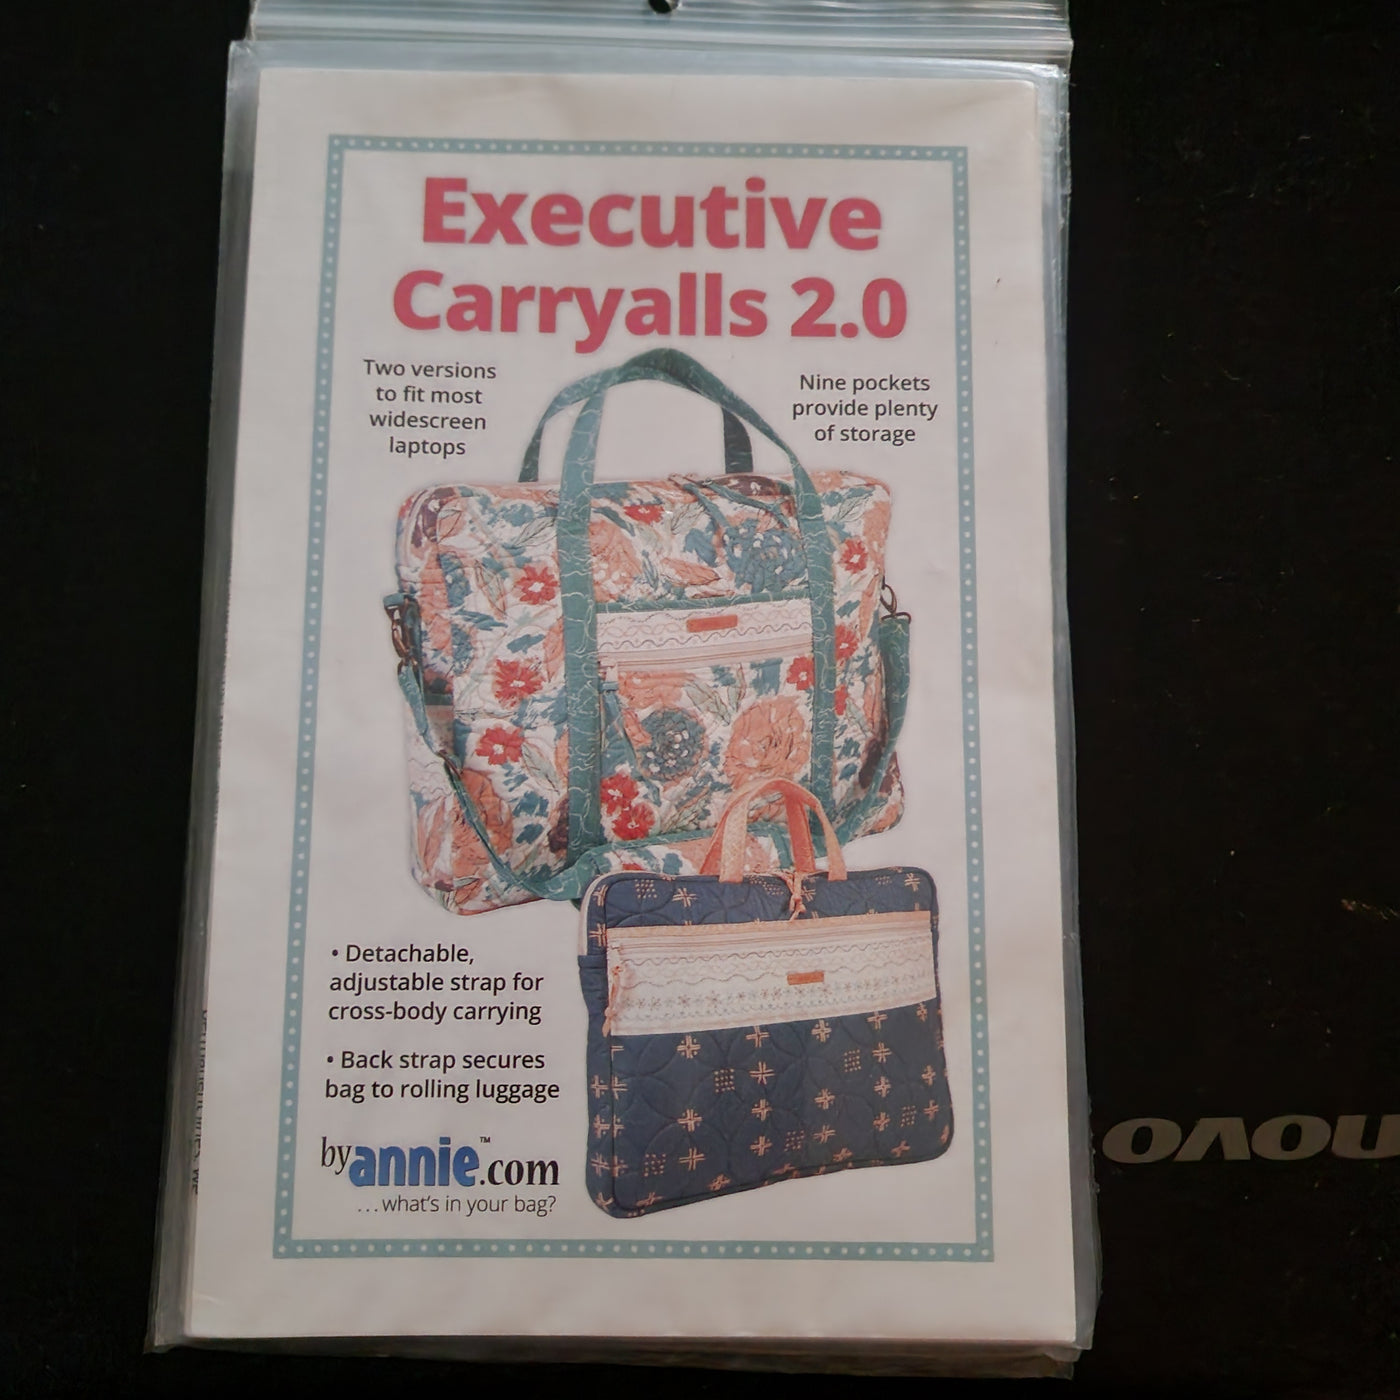 Executive Carryalls 2.0